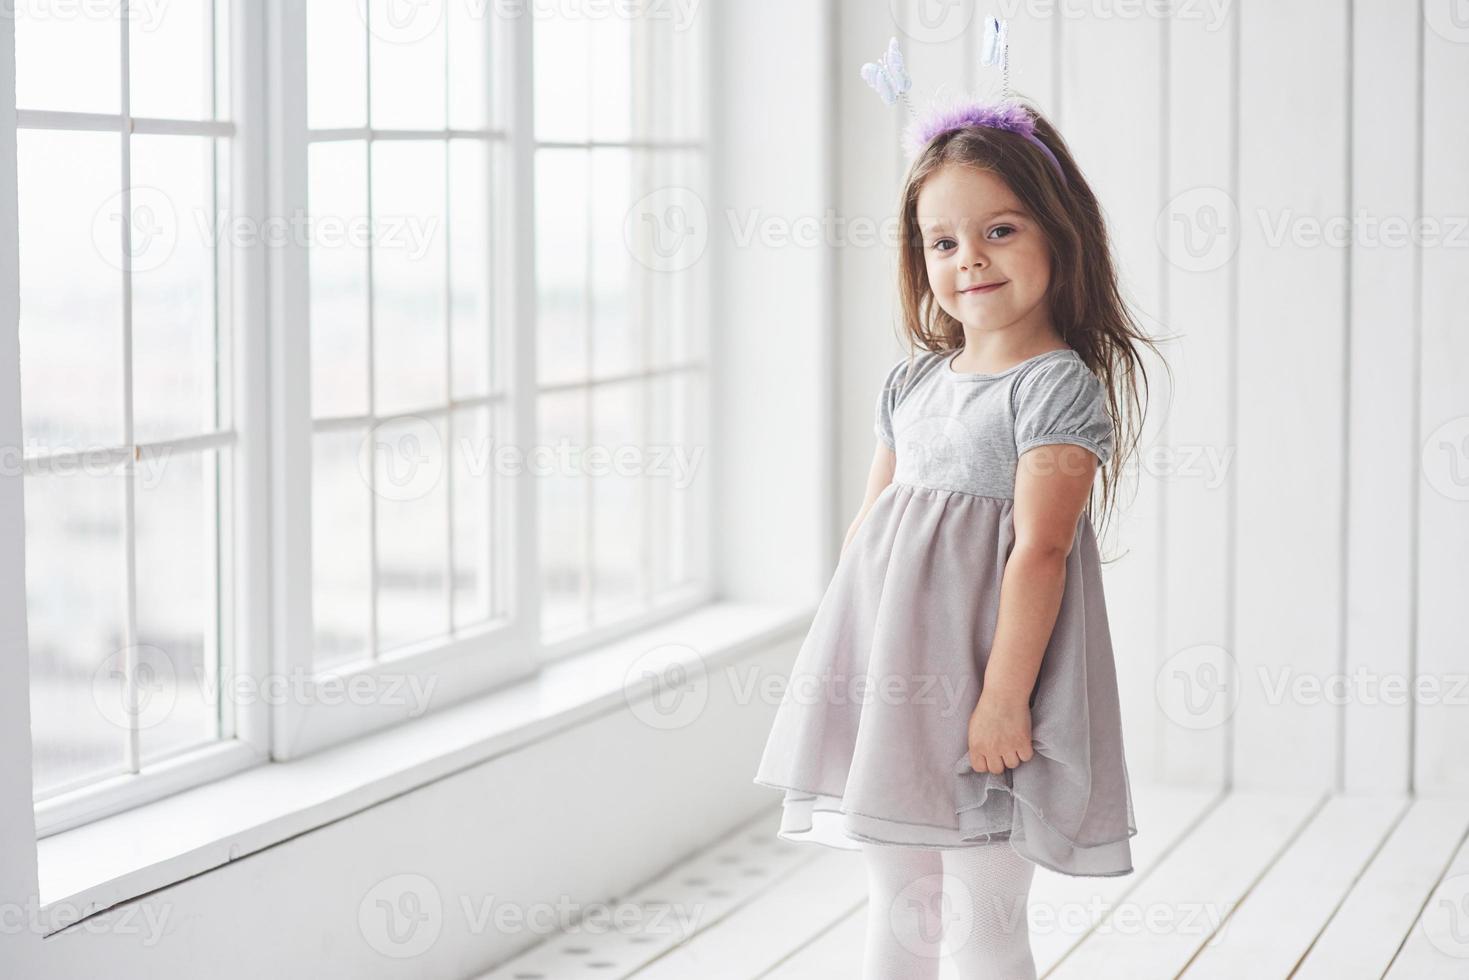 jolie petite fille en robe debout dans la salle blanche près des fenêtres photo